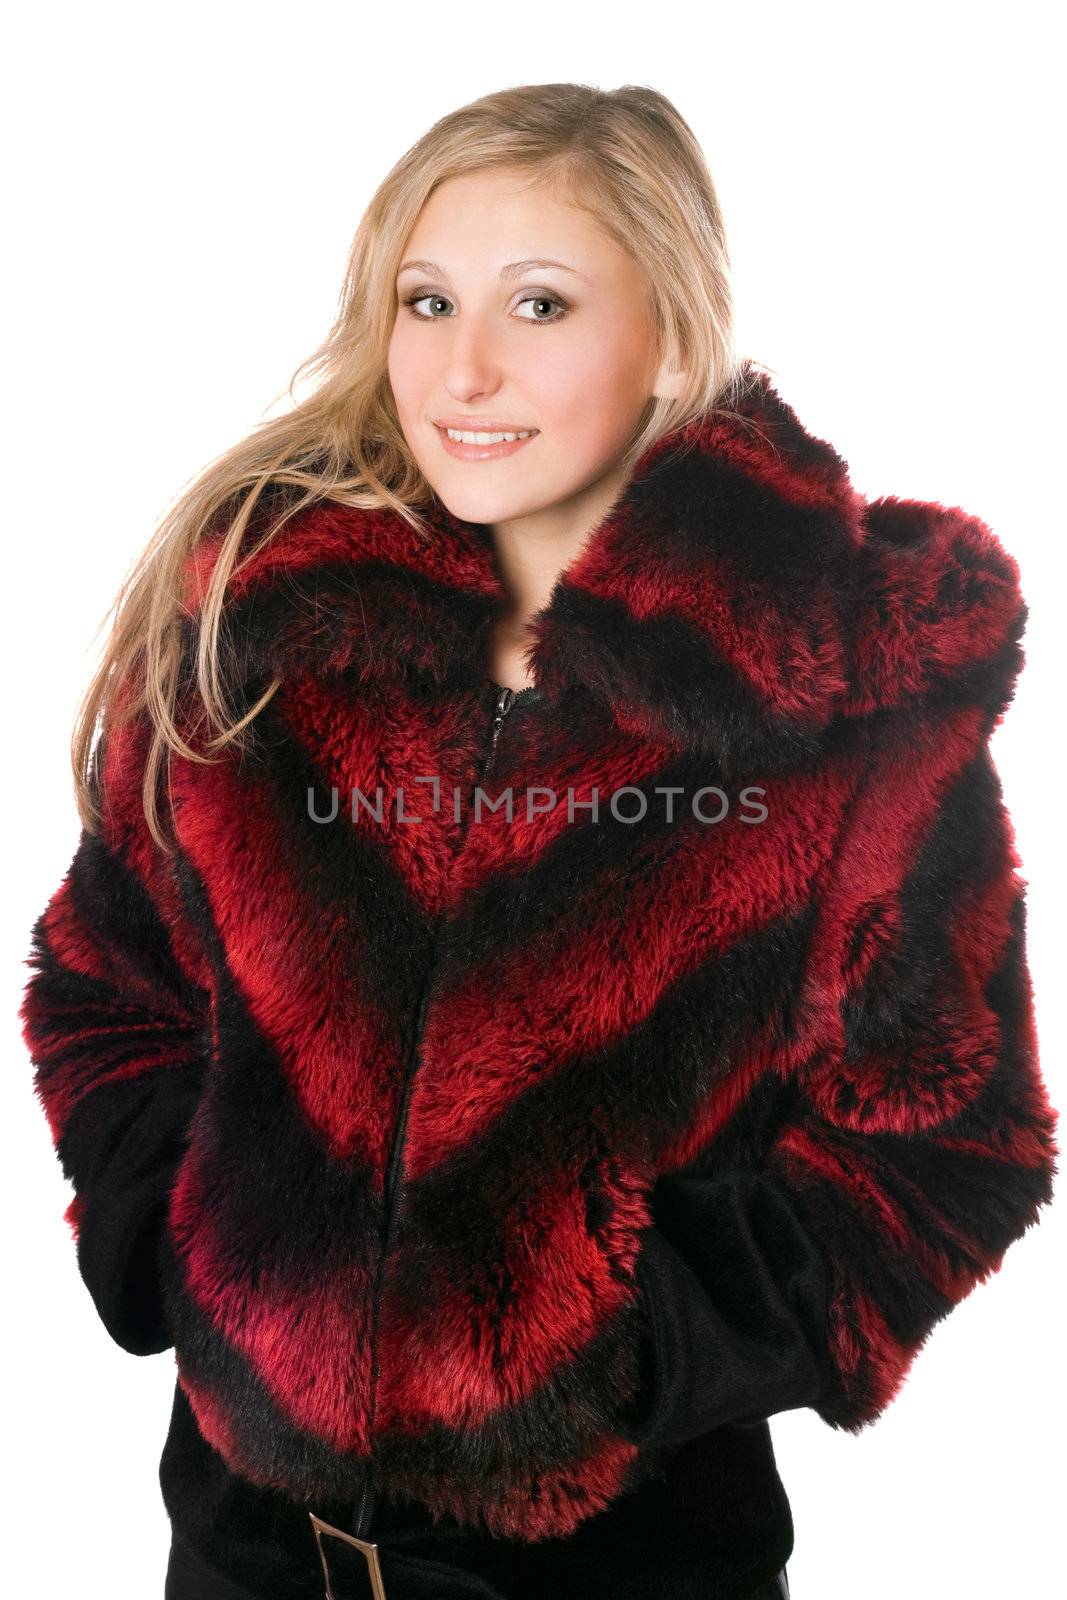 Portrait of joyful blond woman in fur jacket. Isolated